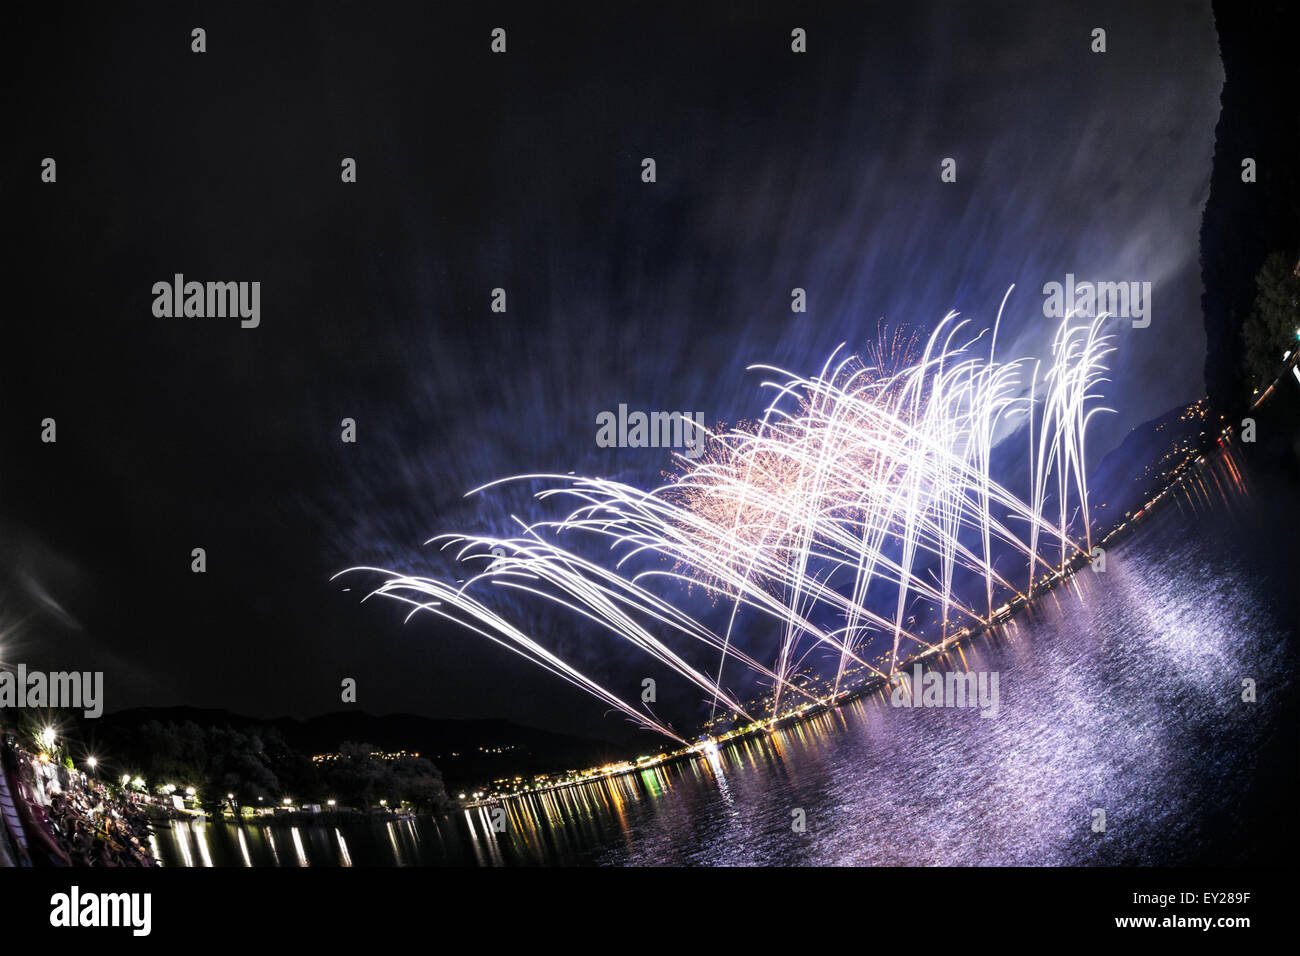 Feuerwerk auf dem Luganer See an einem Sommerabend gesehen von Lakefornt von Lavena Ponte Tresa, Lombardei - Italien Stockfoto